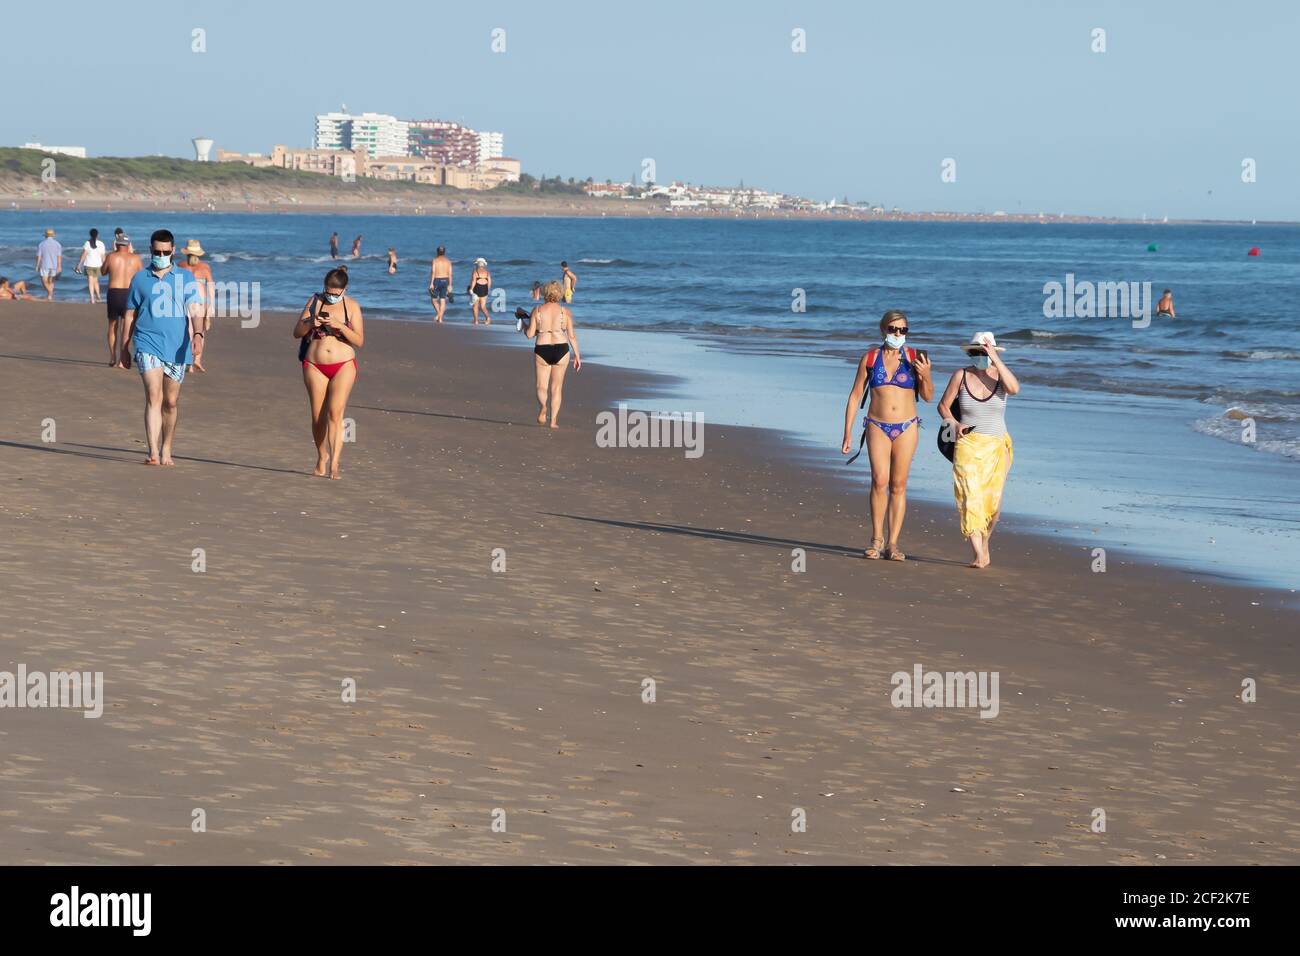 Punta Umbria, Huelva, Spagna - 31 agosto 2020: Persone che camminano in spiaggia indossando maschere protettive o mediche. Nuova normalità in Spagna con d. Sociale Foto Stock